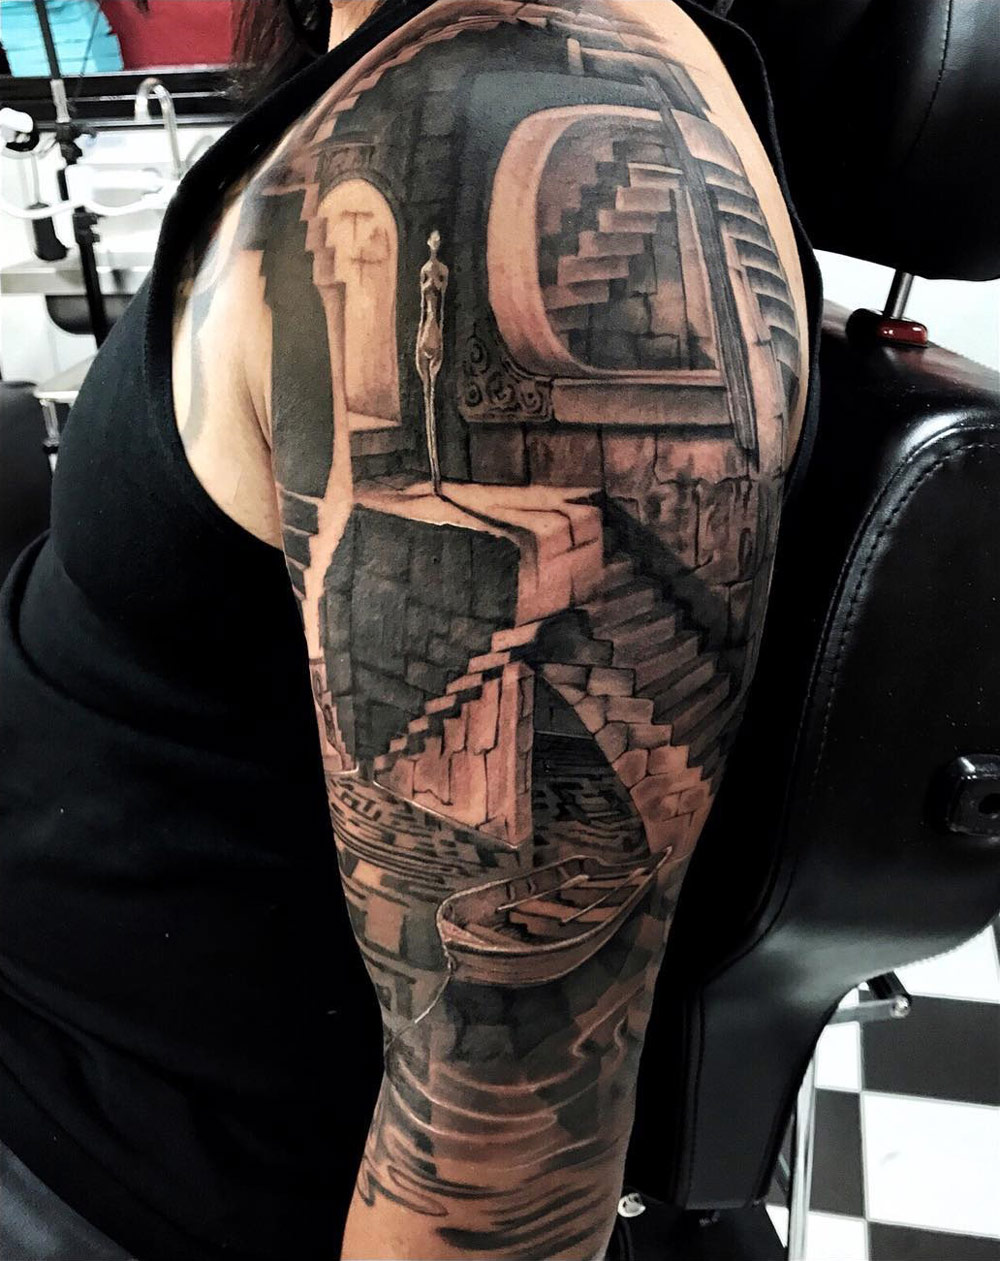 Labyrinth arm tattoo